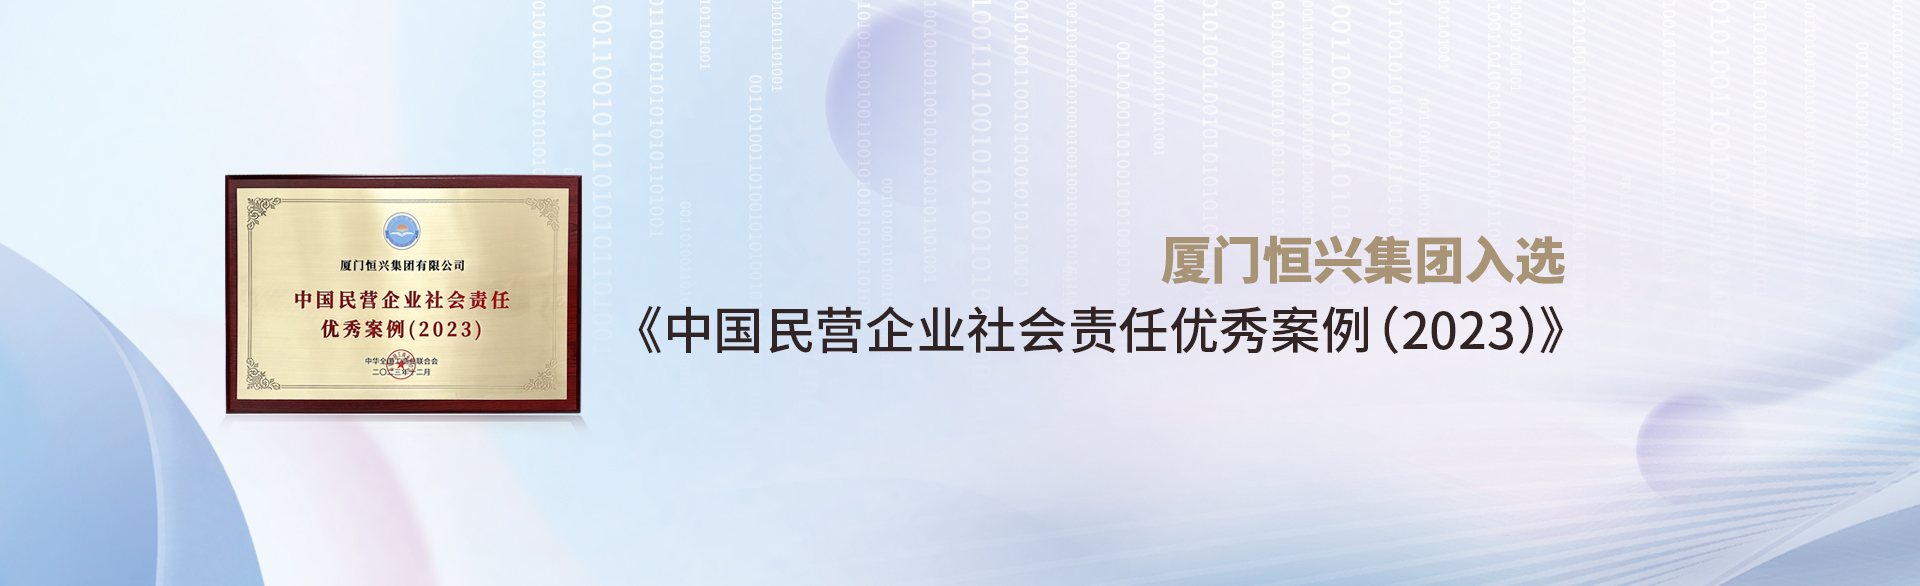 厦门恒兴集团入选《中国民营企业社会责任优秀案例(2023)》